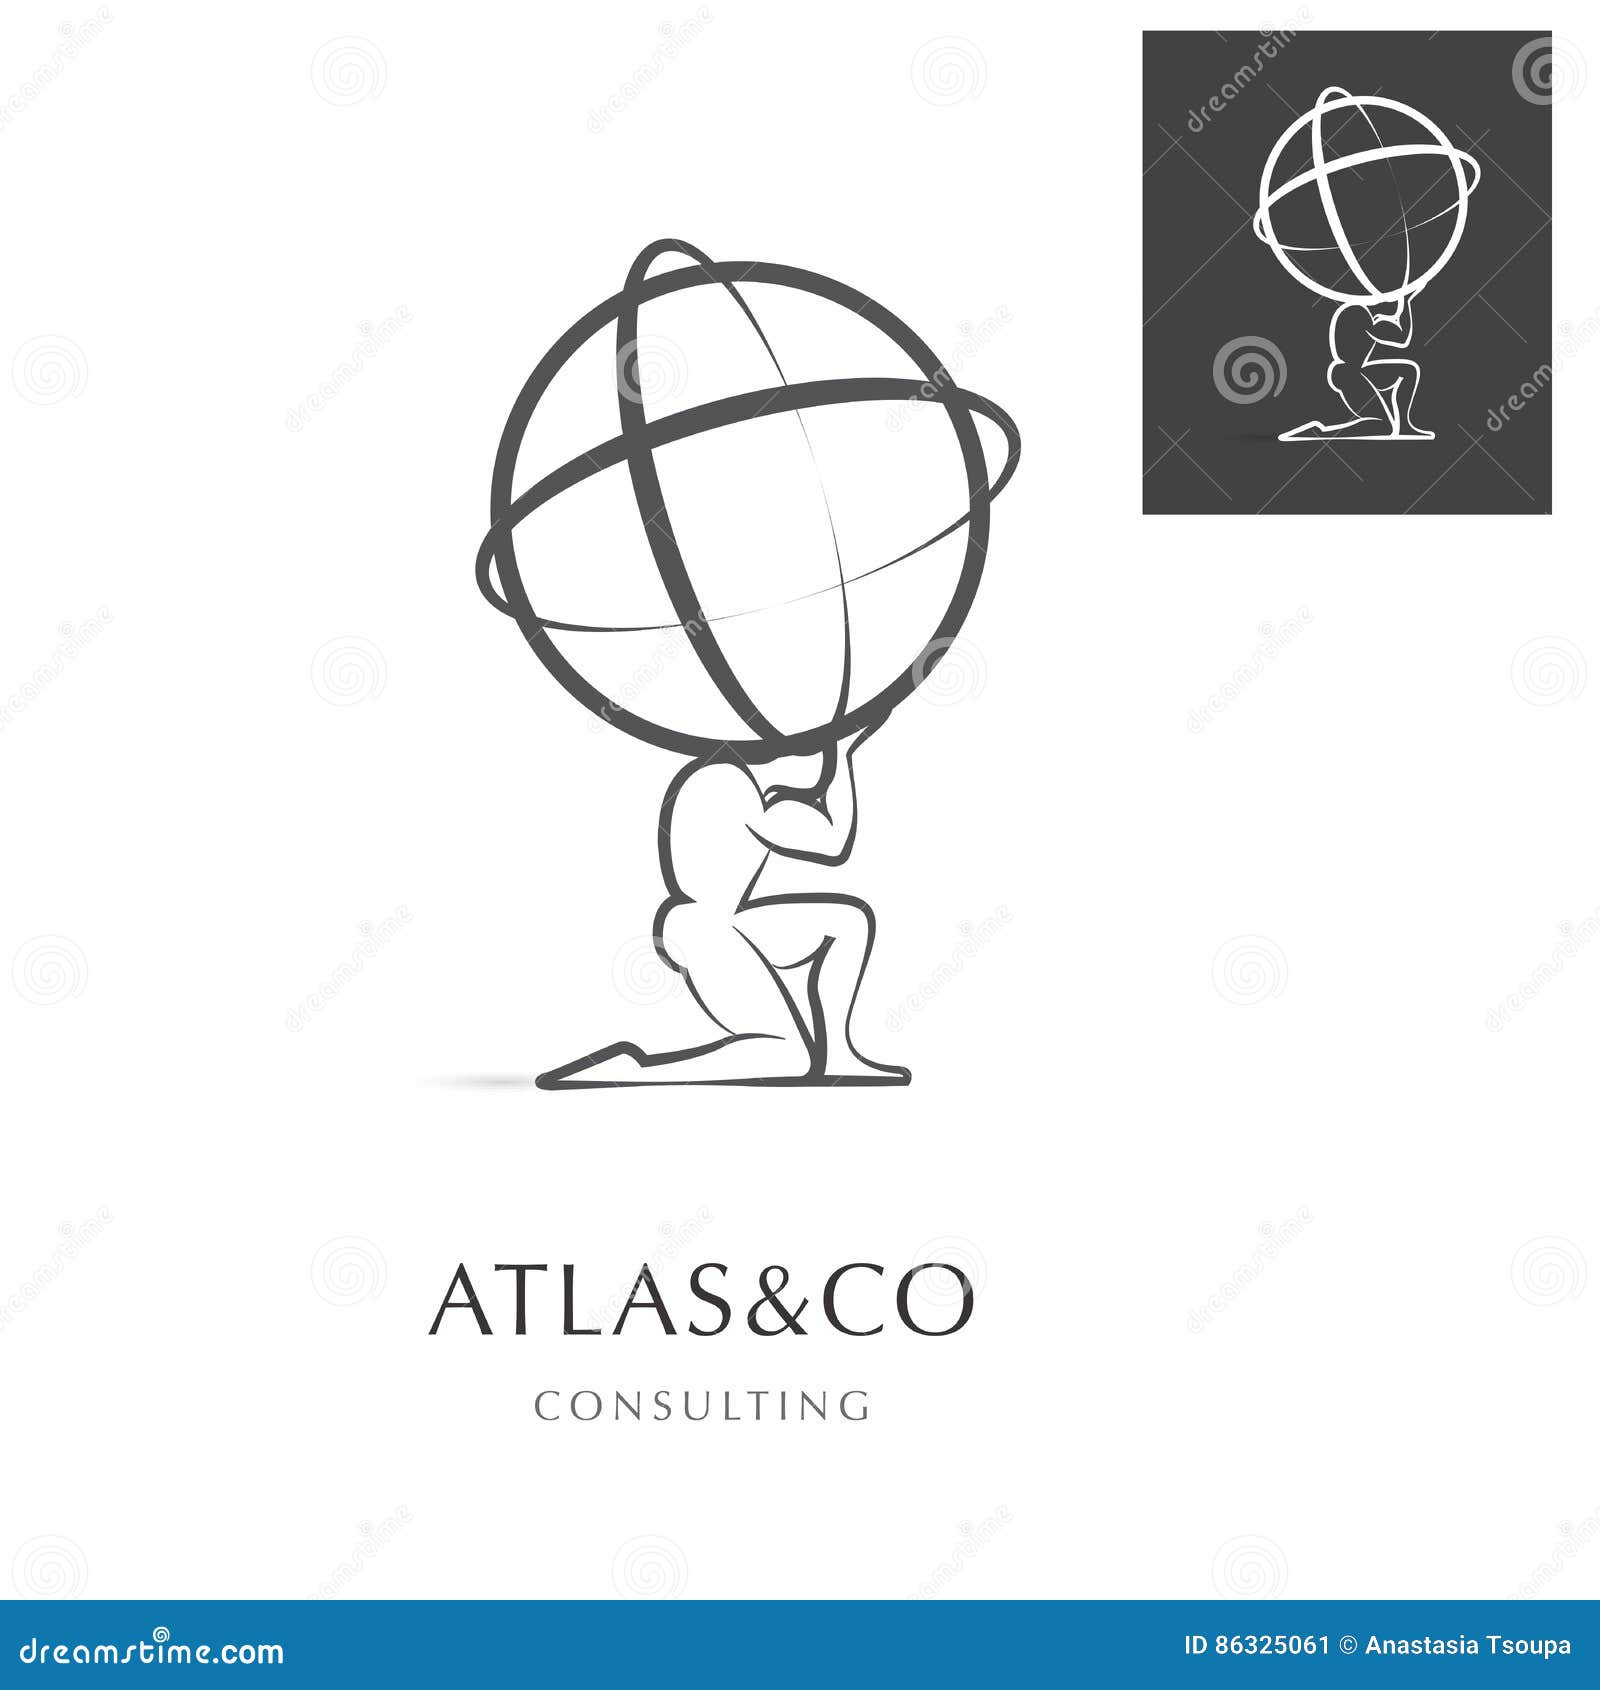 atlas, corporate logo 